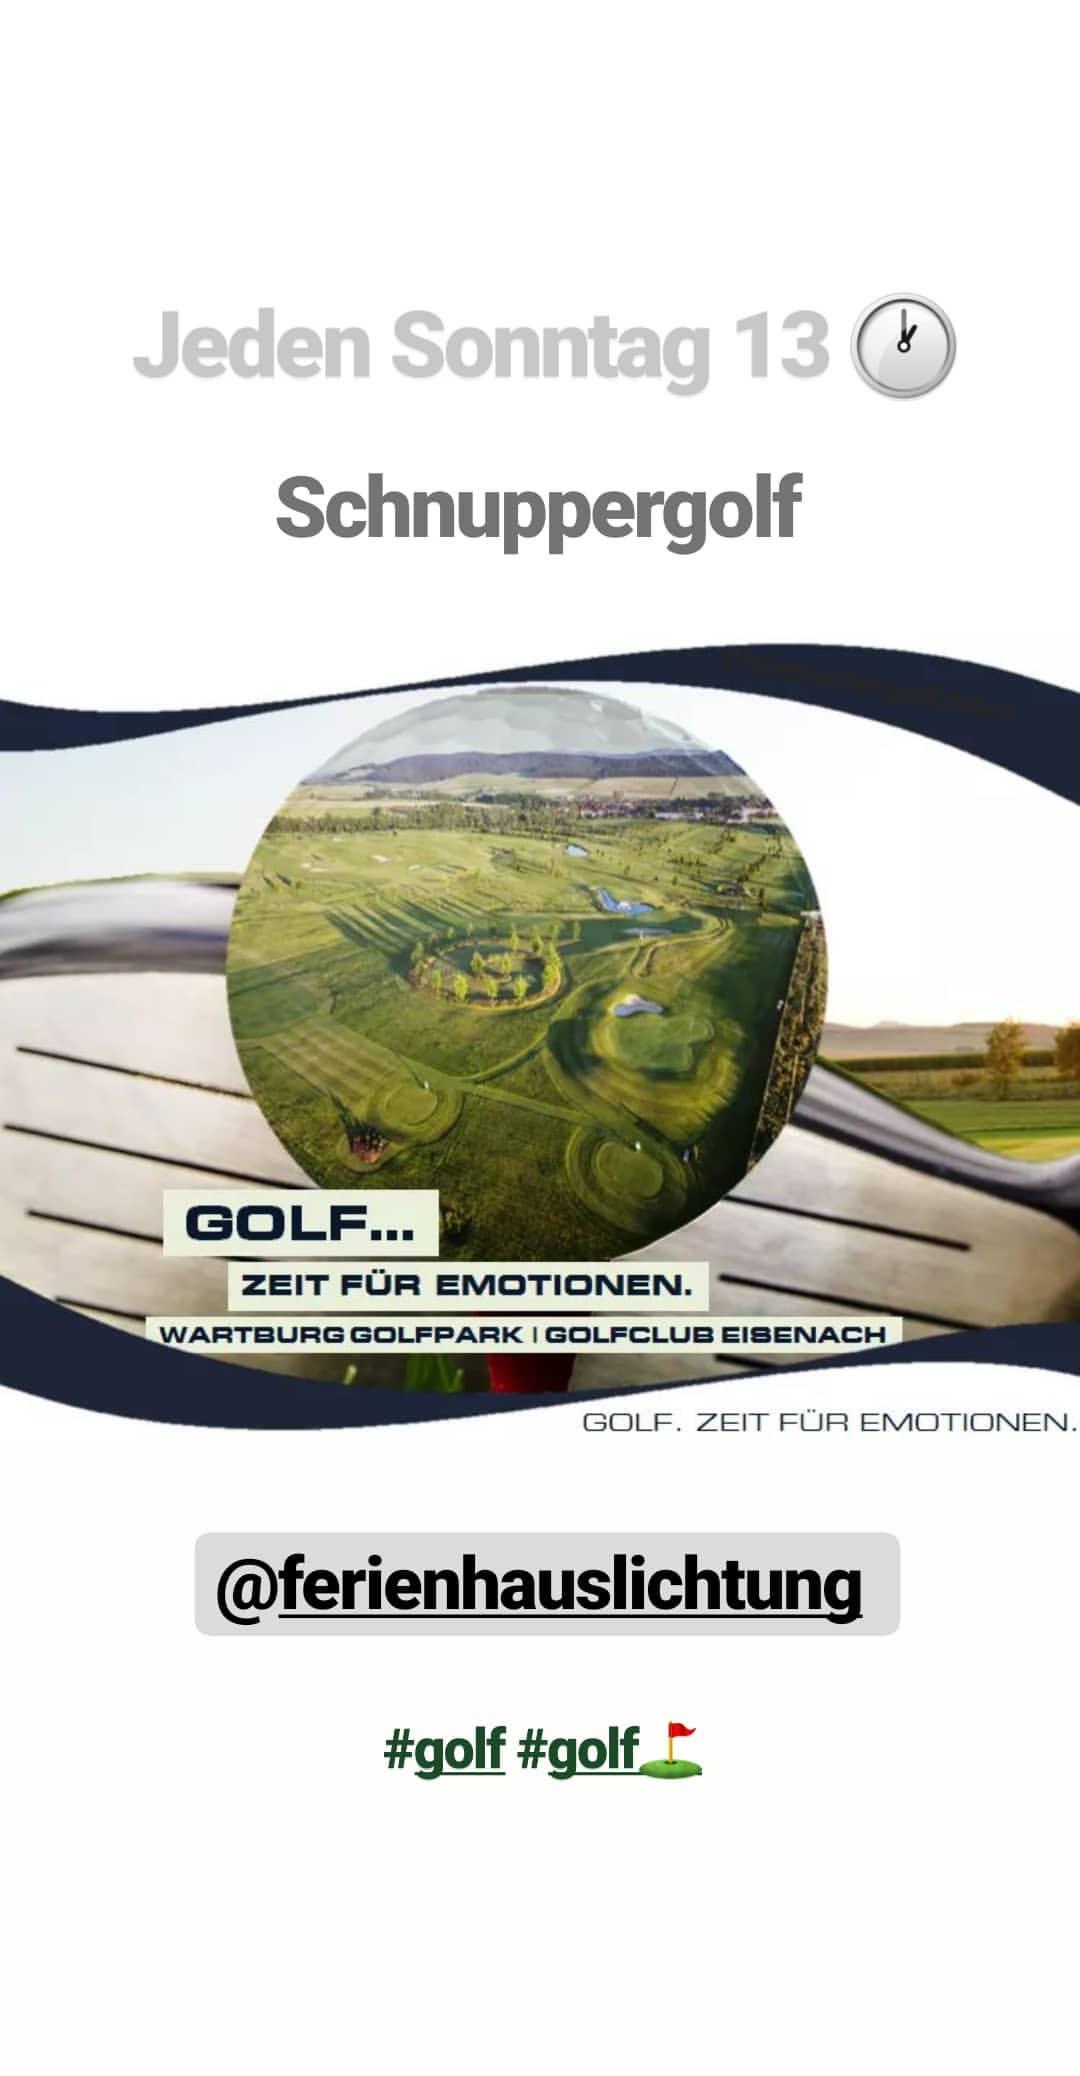 Golf spielen. Schnuppergolf im Golfclub Eisenach bei der Ferienhaus Lichtung